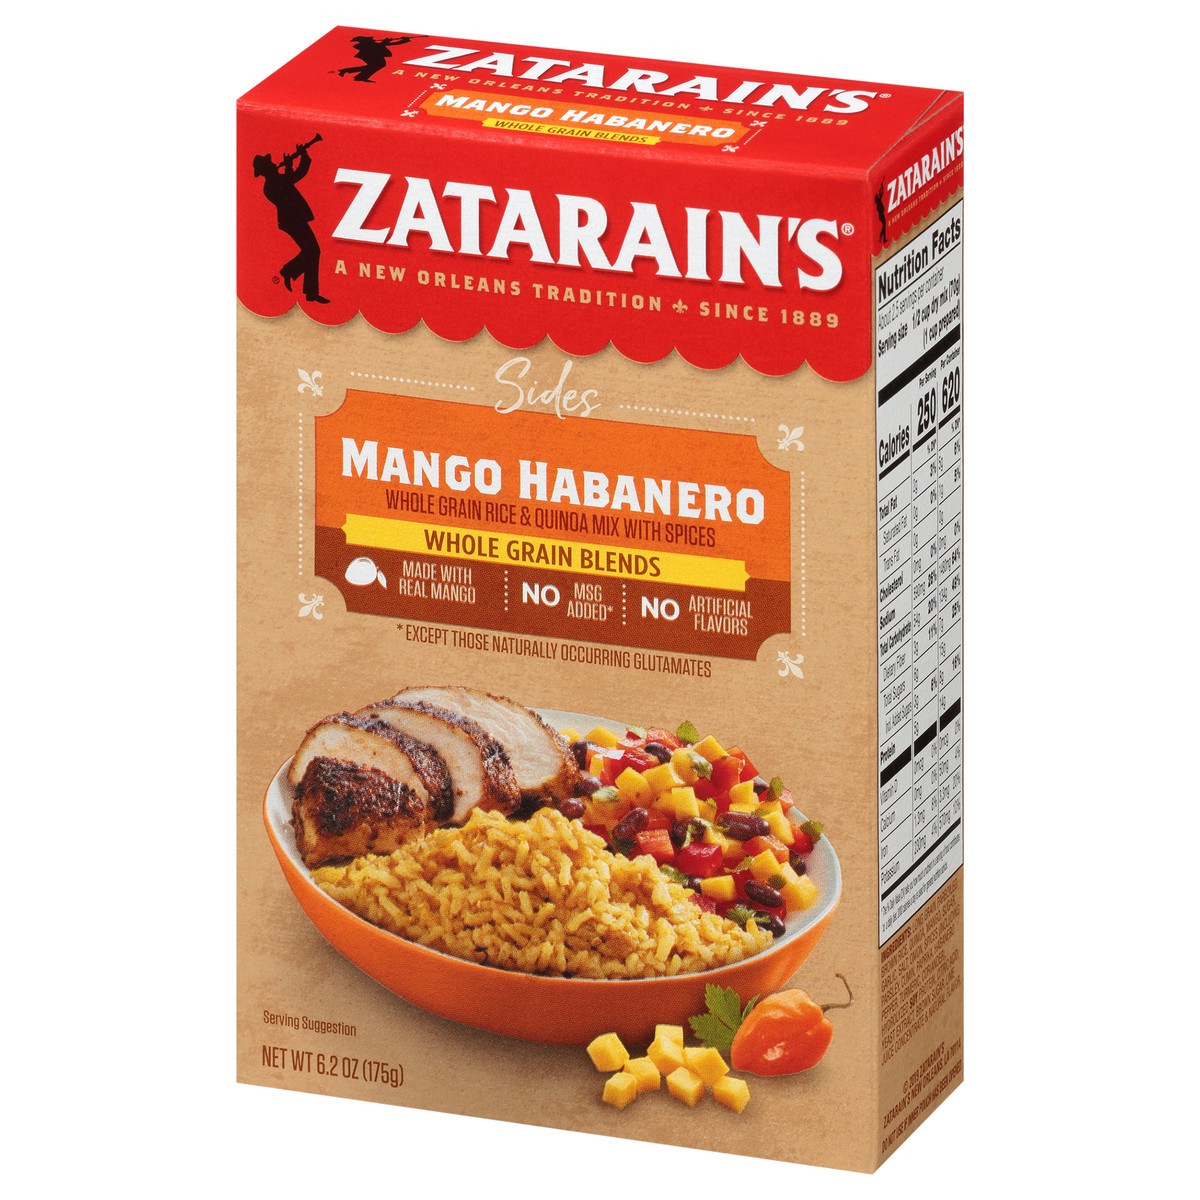 slide 3 of 9, Zatarain's Sides Mango Habanero Rice & Quinoa Whole Grain Blends 6.2 oz. Box, 6.2 oz